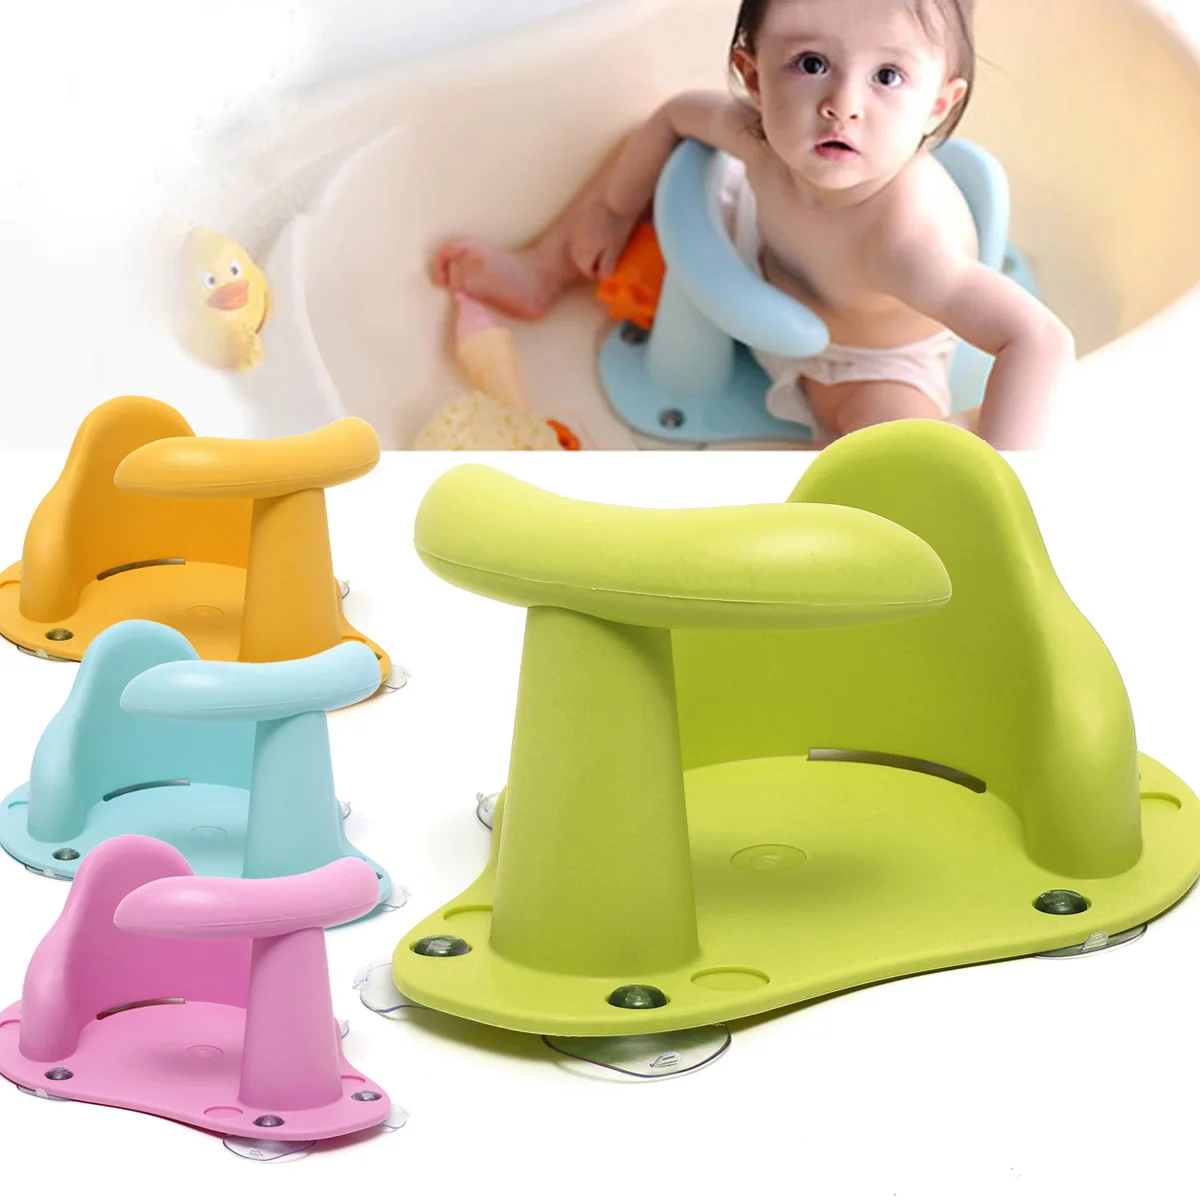  Asiento de bañera para bebé, asiento de baño plegable para bebé,  silla de baño antideslizante para bebé sentado, sillas envolventes de baby  shower, asientos de baño para bebé recién nacido de